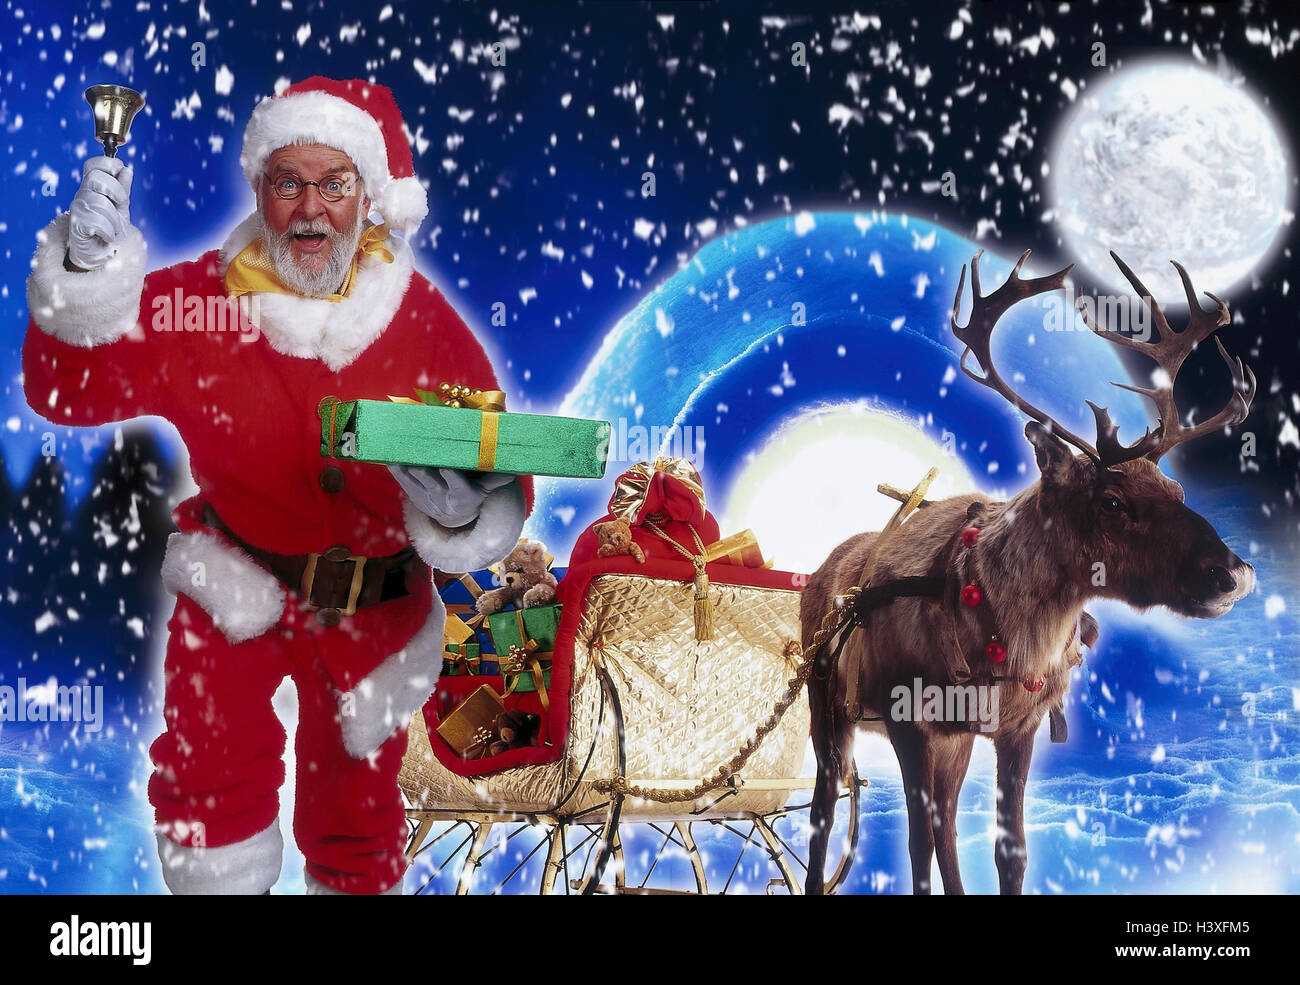 Santa Claus, Bell, présent, igloo, glisser du pensionné, nuit, Noël, Père  Noël, Père Noël, Pôle Nord, la distribution de cadeaux, de neige, hiver,  pleine lune, lune, donner, présenter, bague, cadeau de Noël,